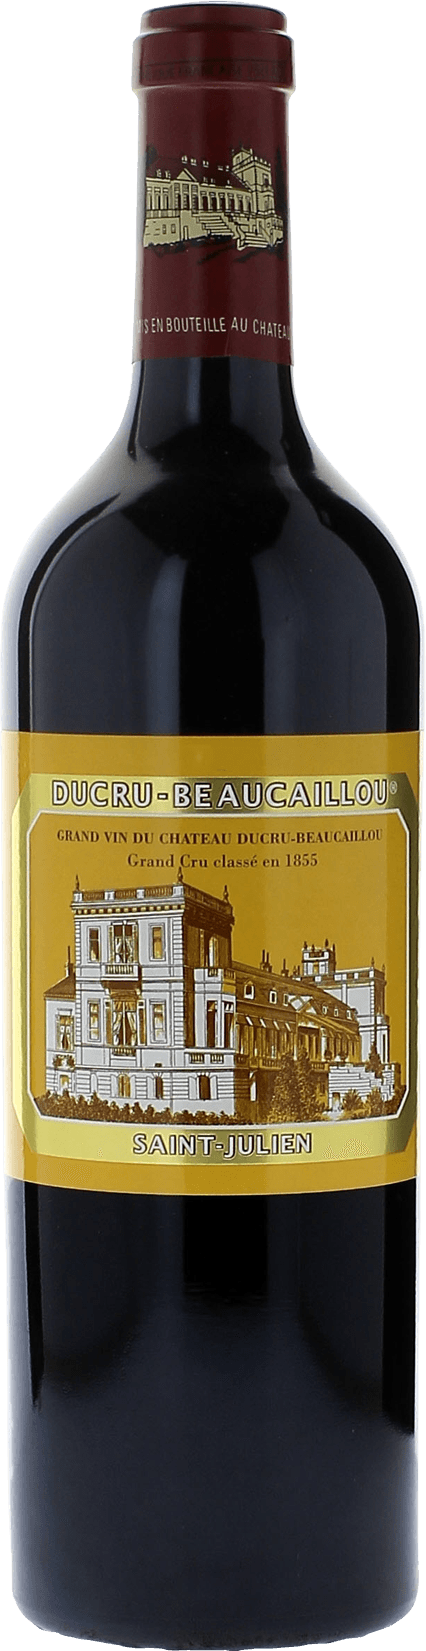 Ducru beaucaillou 1992 2me Grand cru class Saint-Julien, Bordeaux rouge